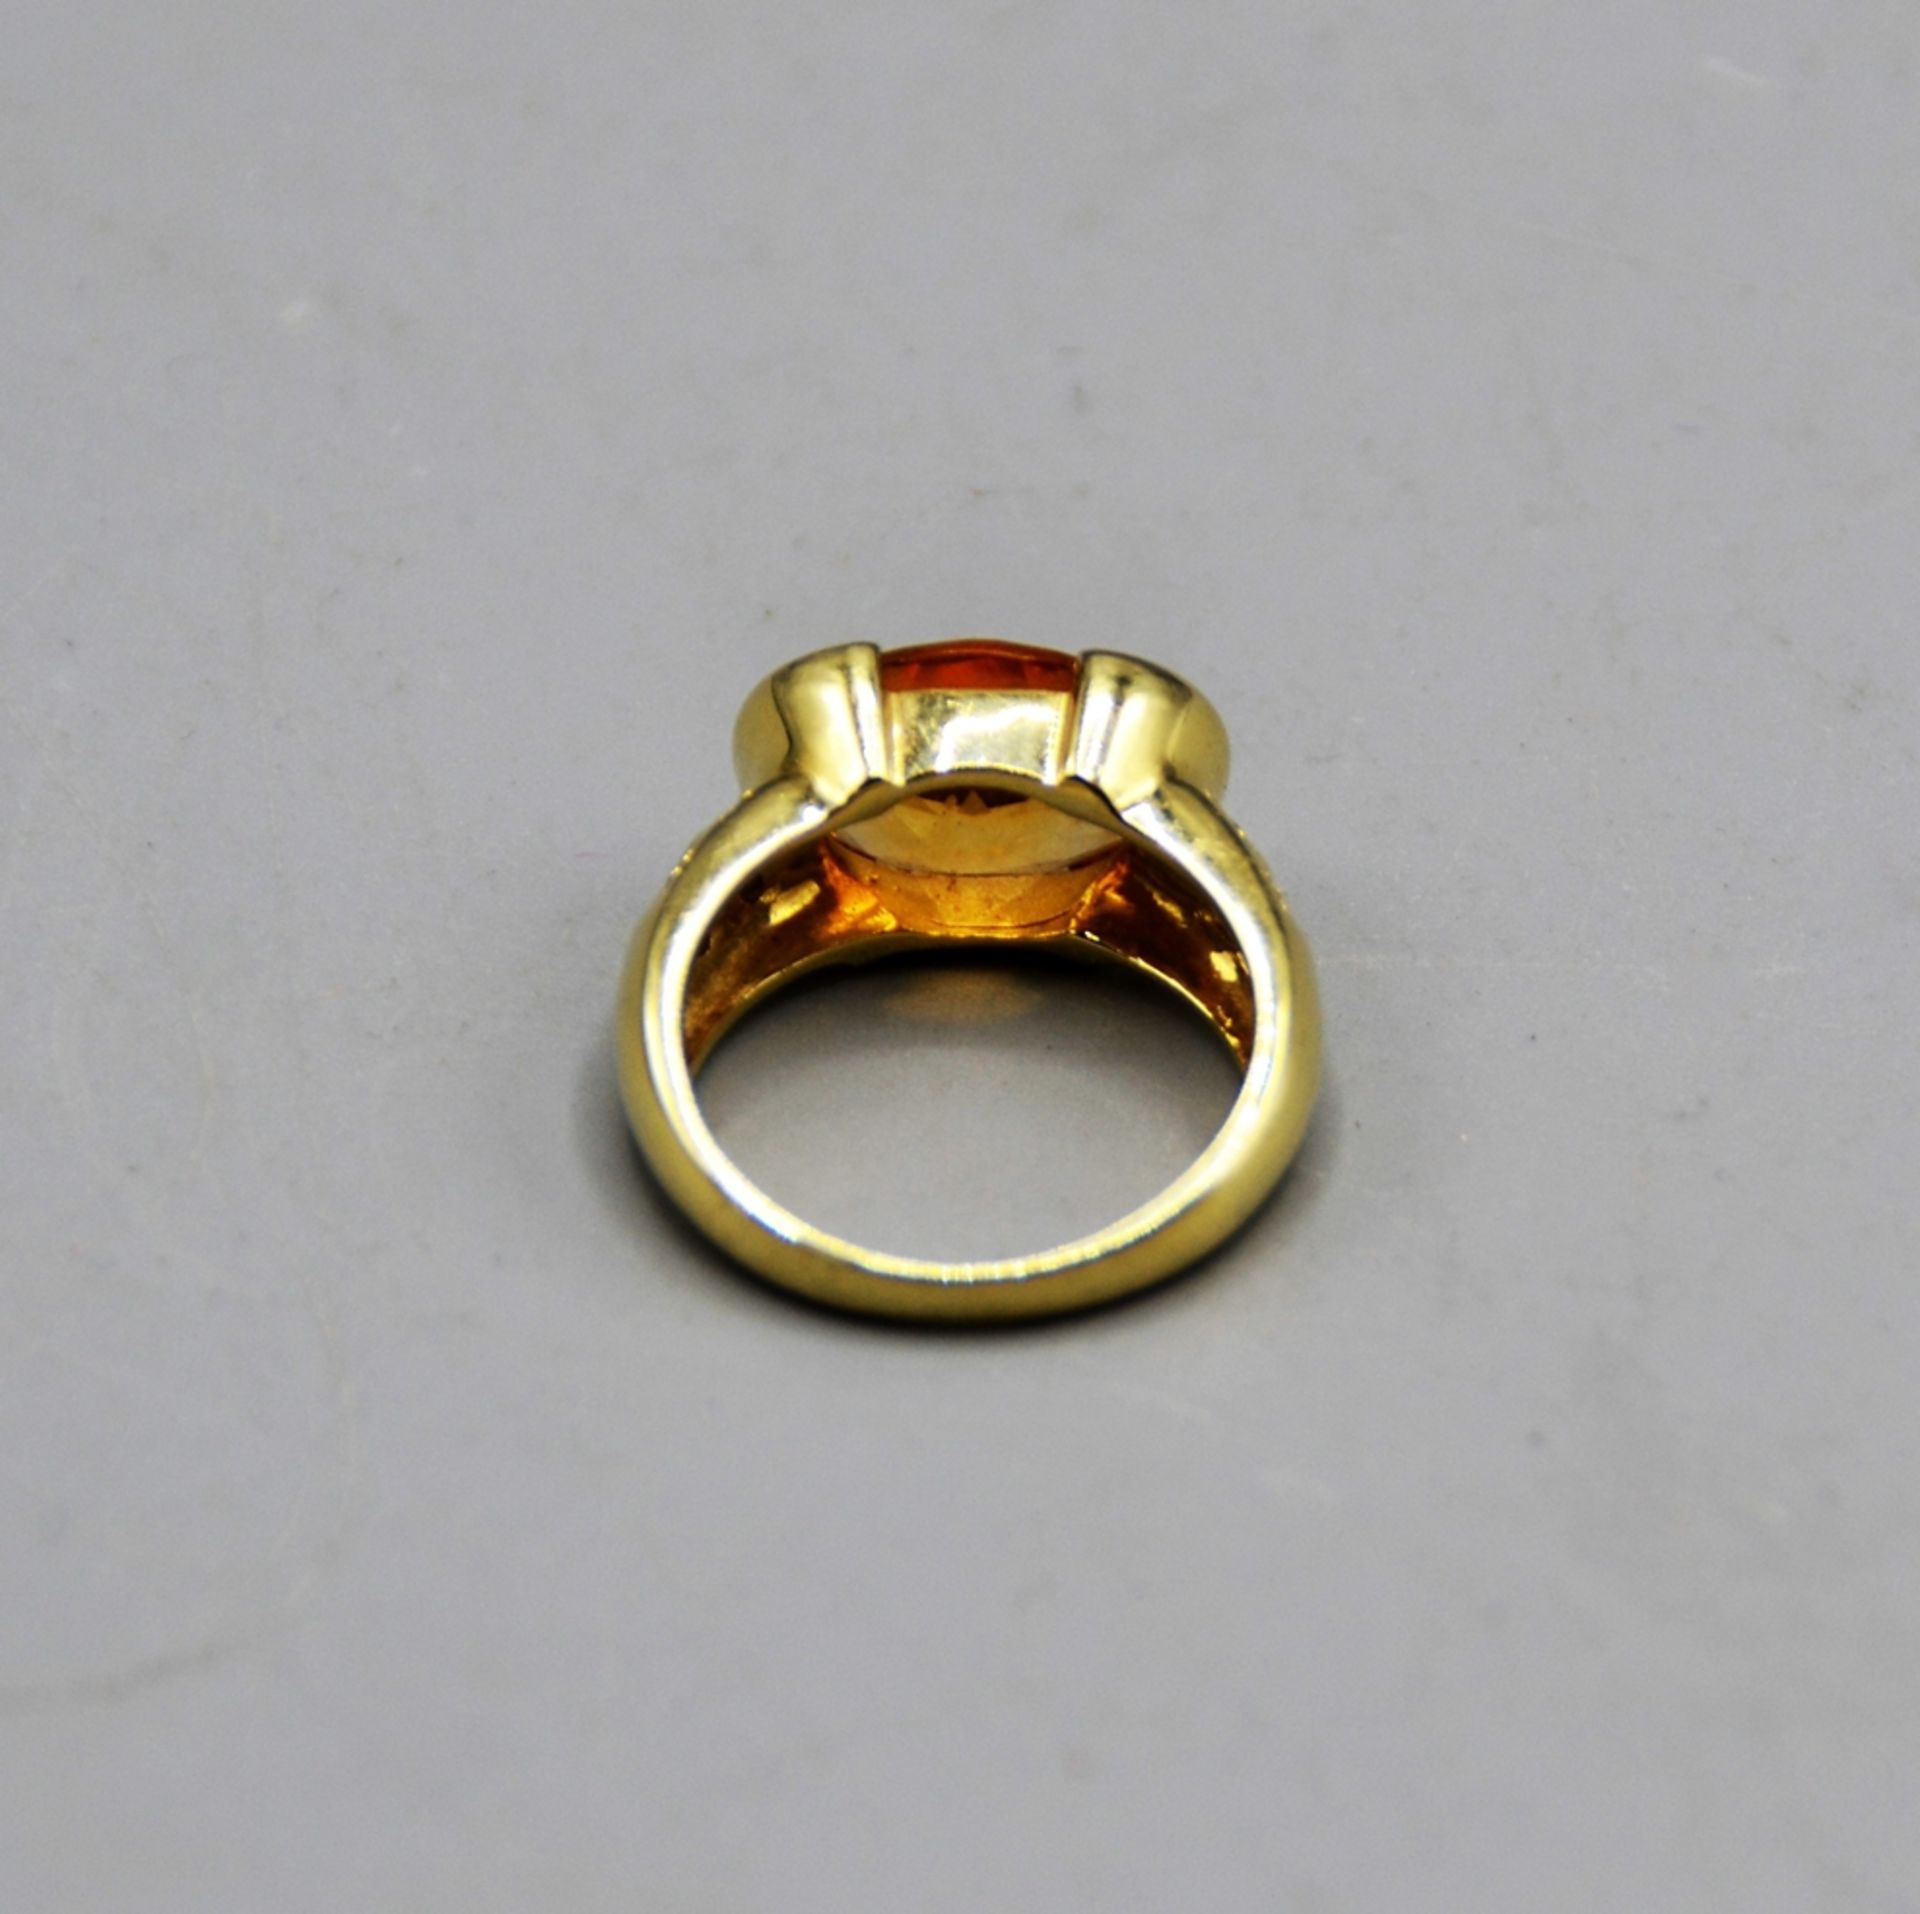 Citrin Goldring 585 mit 8 kl. Diamanten, Citrin ca. 11,6 x 9,7 mm, Ø 17 mm, 7 g - Image 3 of 3